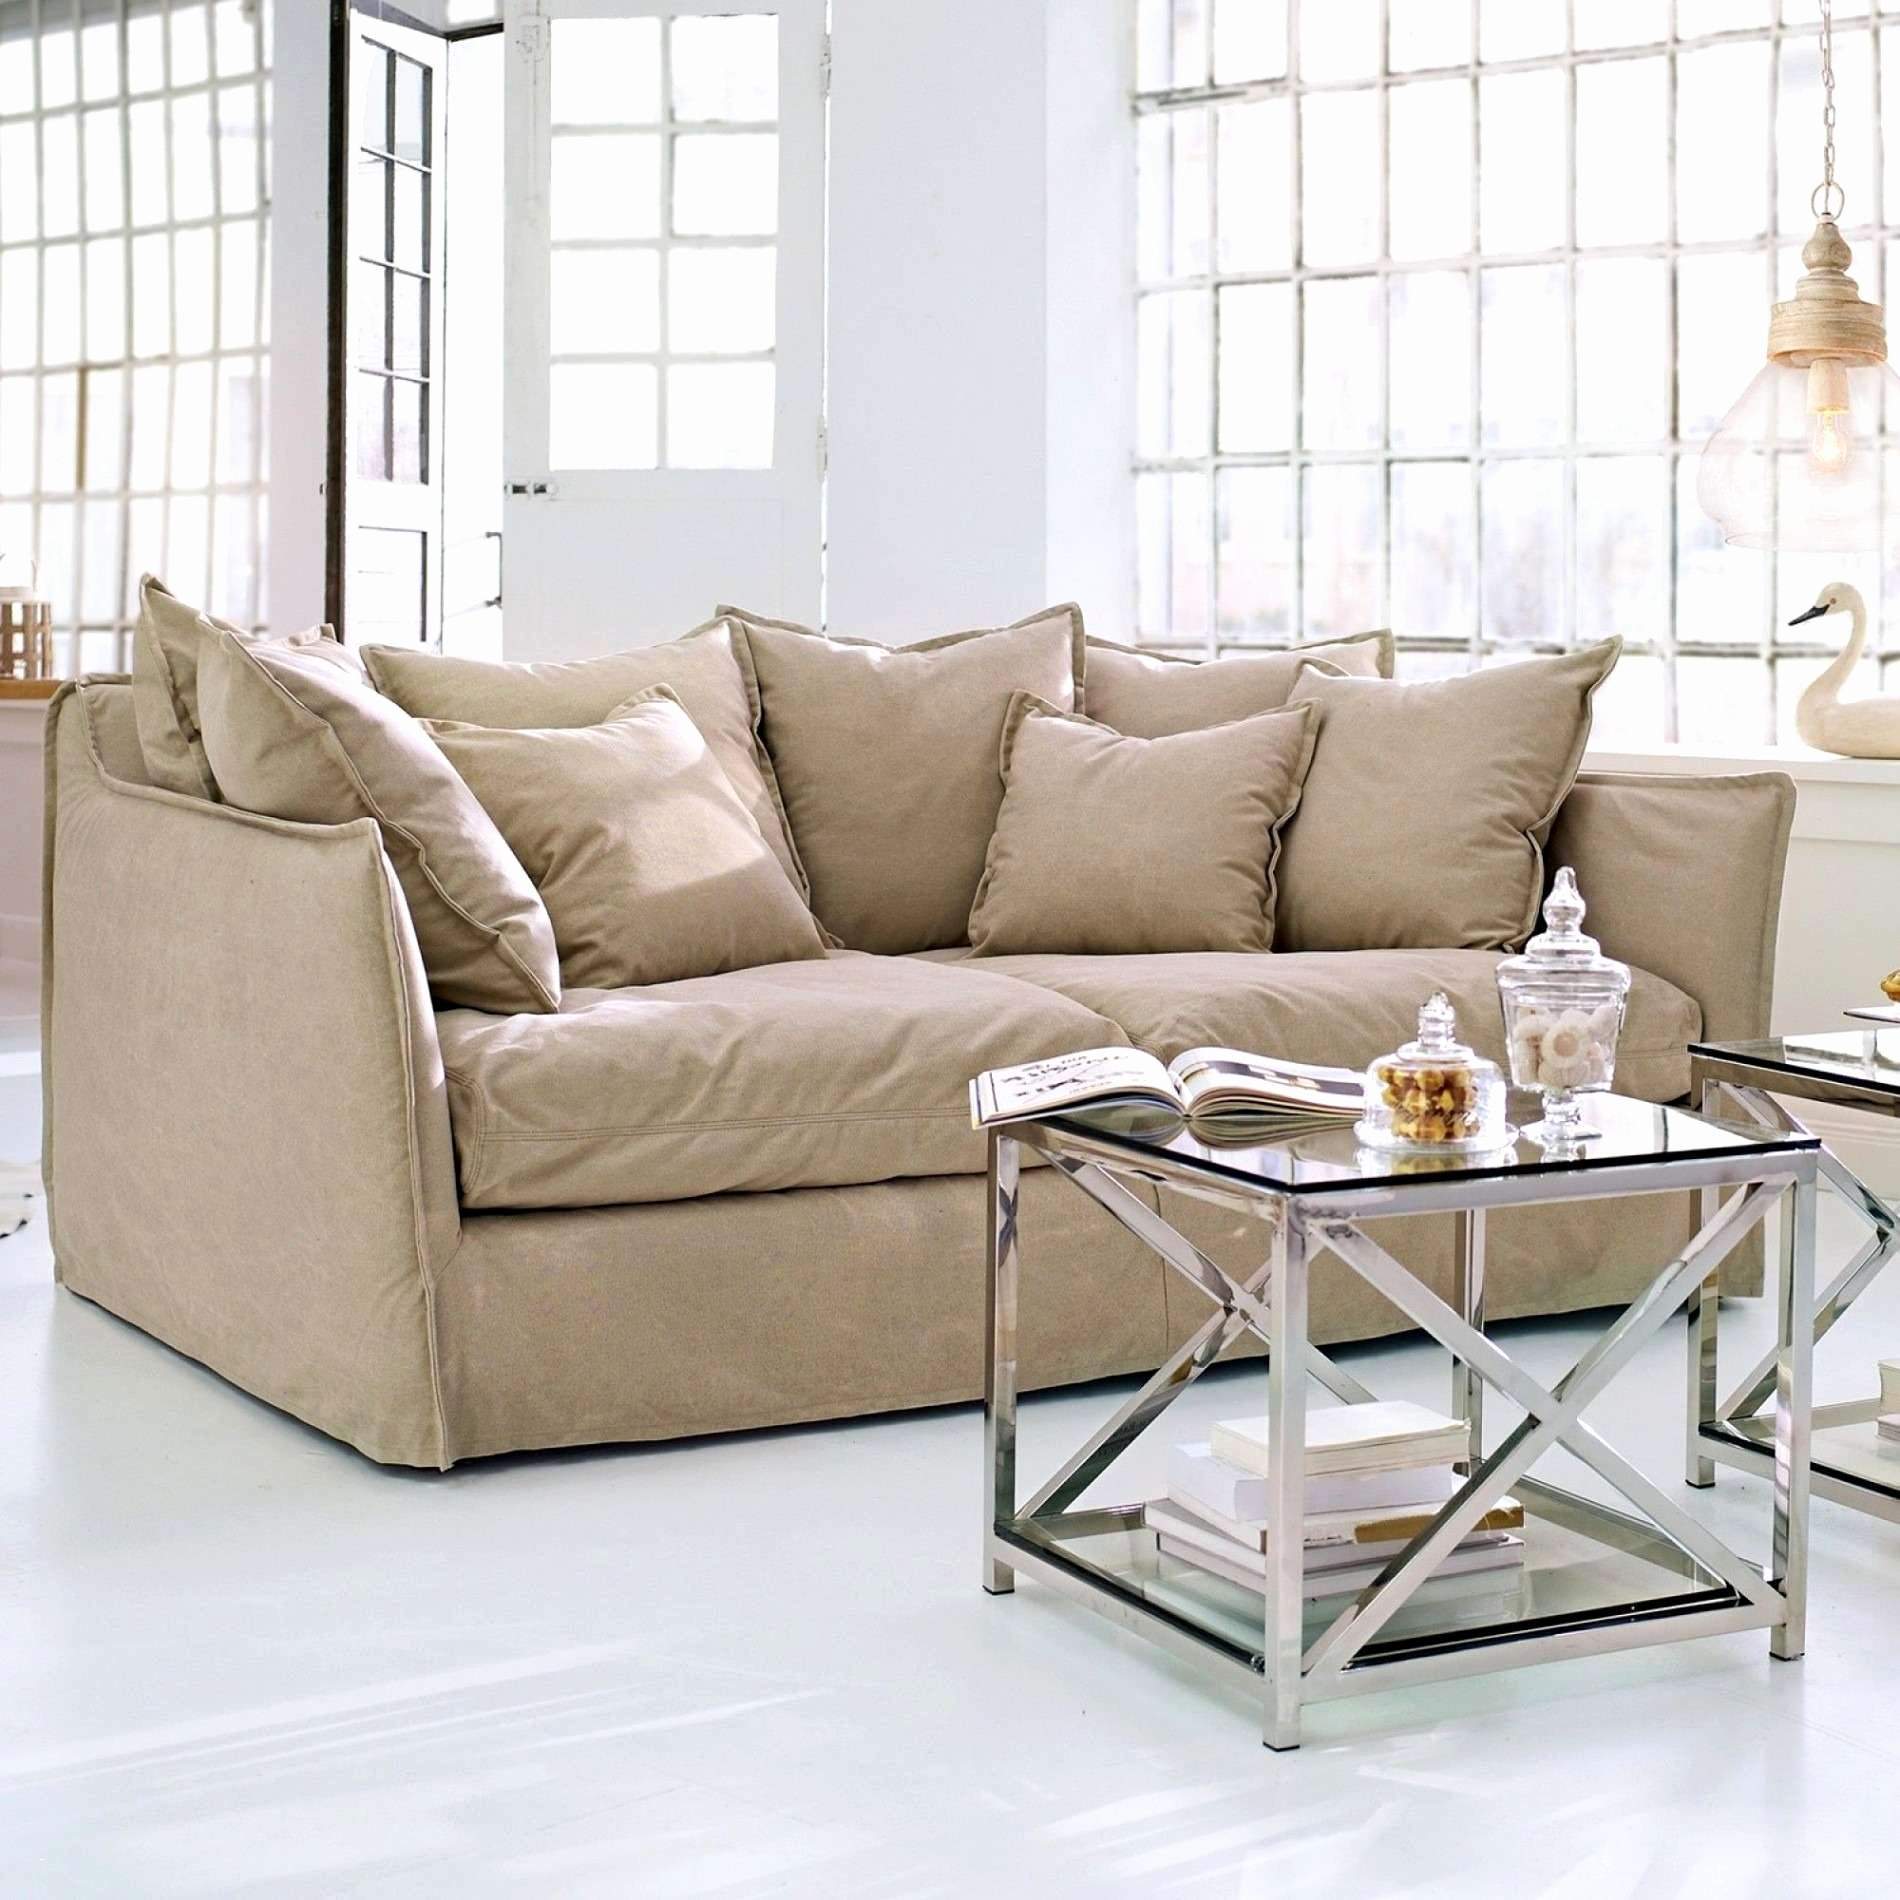 couch garten das beste von 26 neu lounge sofa wohnzimmer inspirierend of couch garten